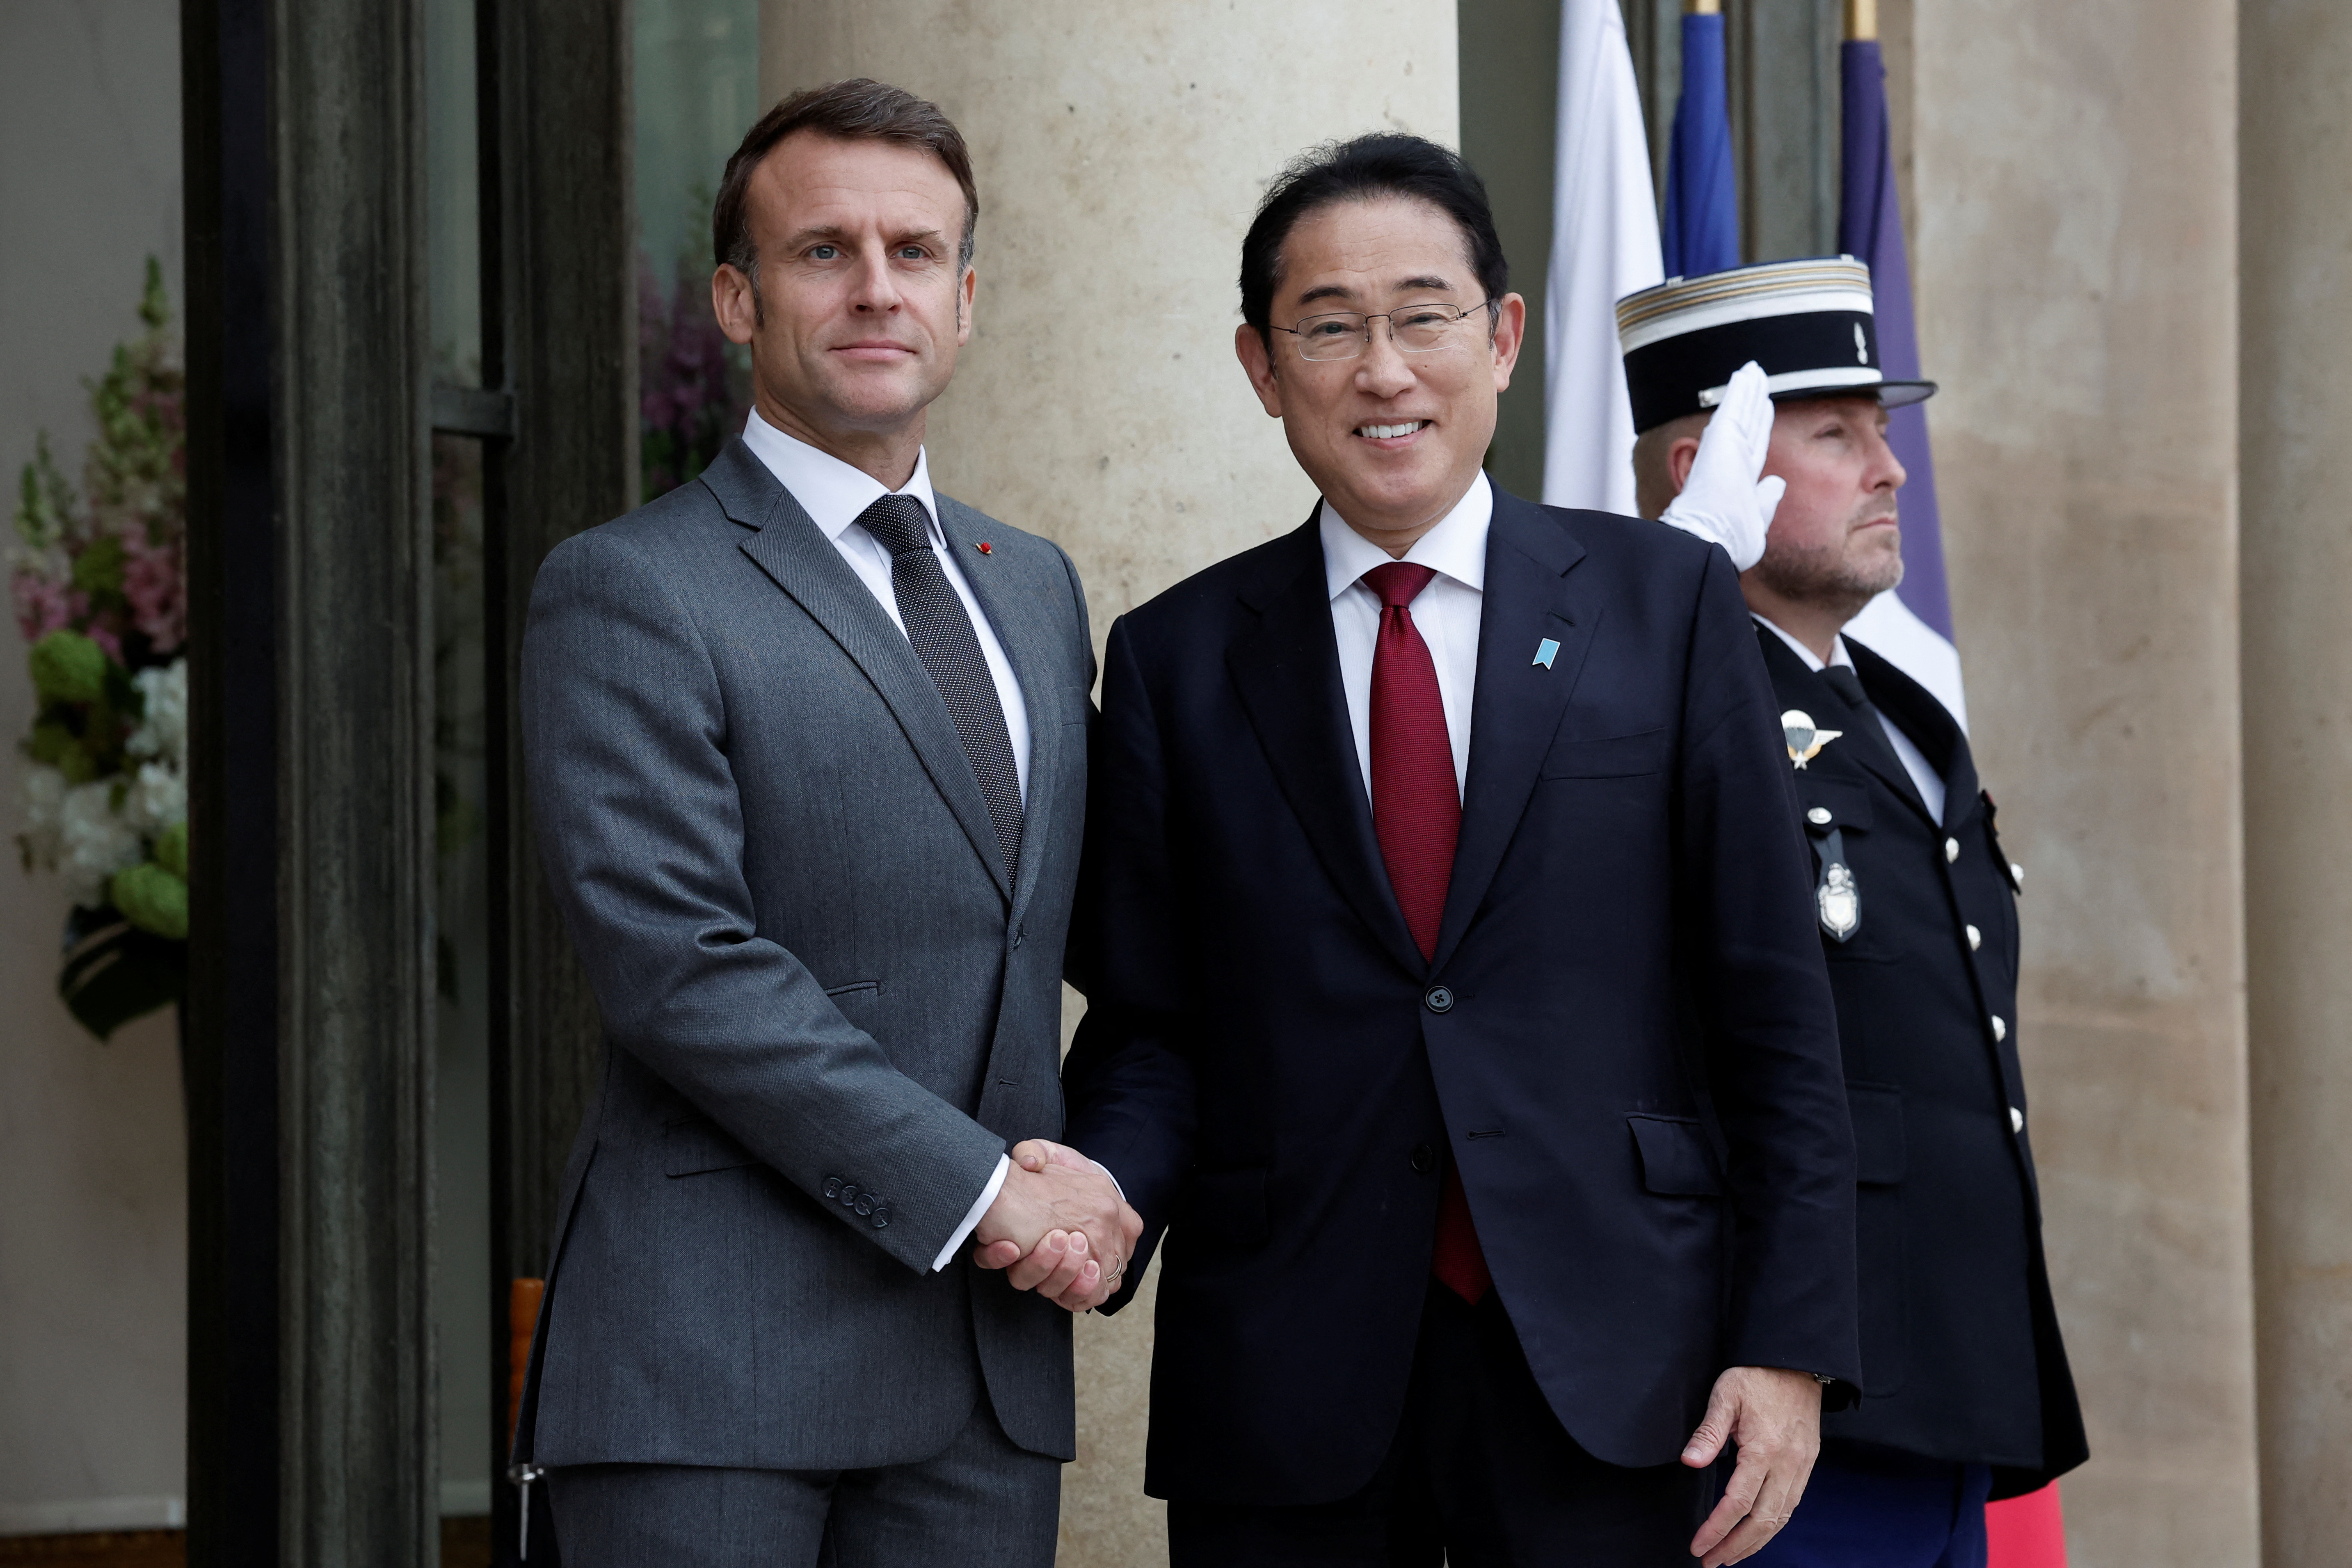 日仏、円滑化協定締結に向けた協議開始で合意　パリで首脳会談